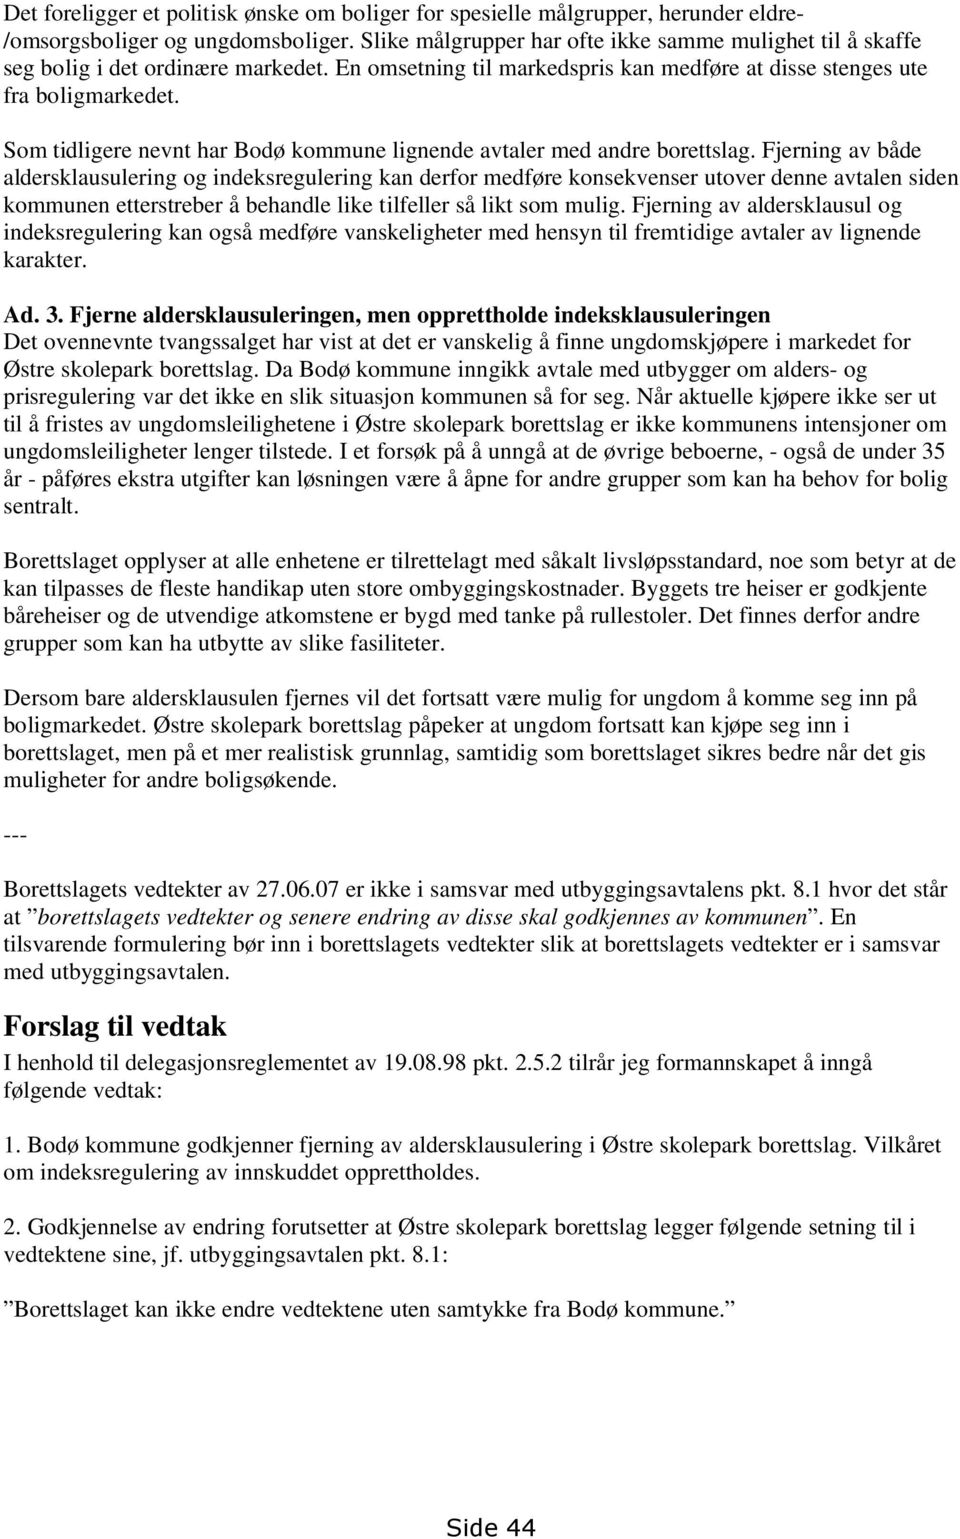 Som tidligere nevnt har Bodø kommune lignende avtaler med andre borettslag.